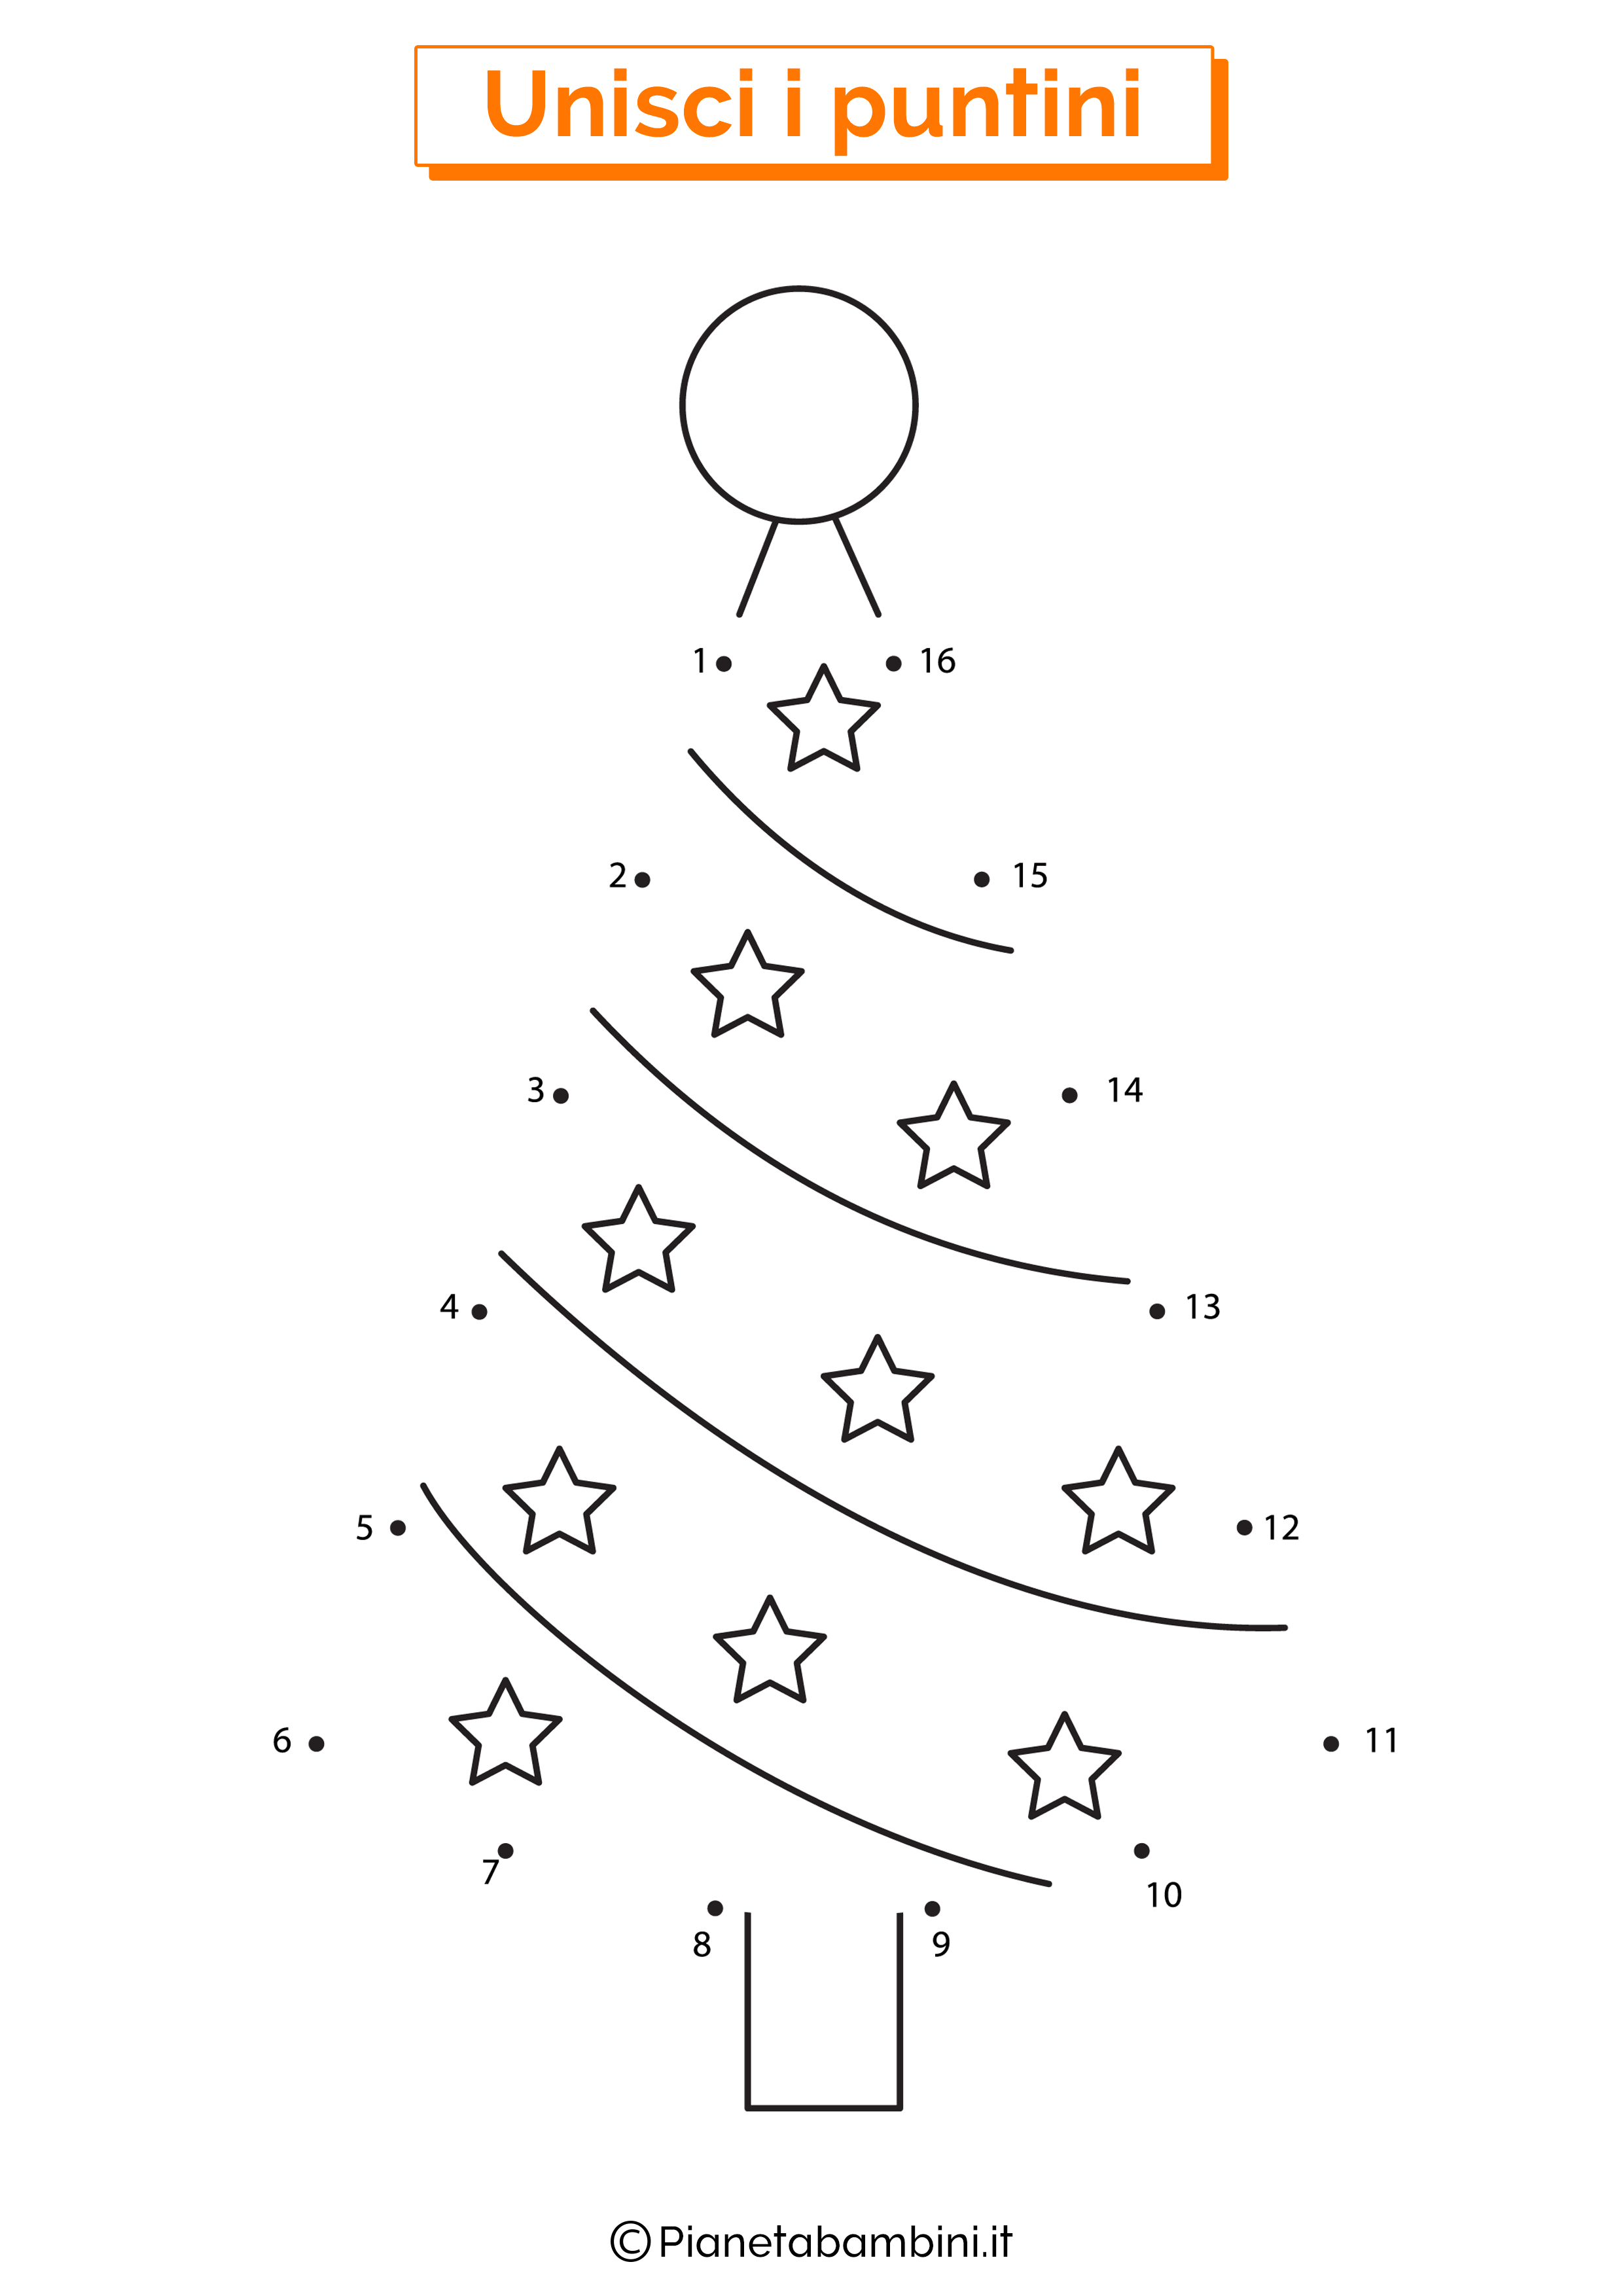 Unisci i puntini albero di Natale 1-16